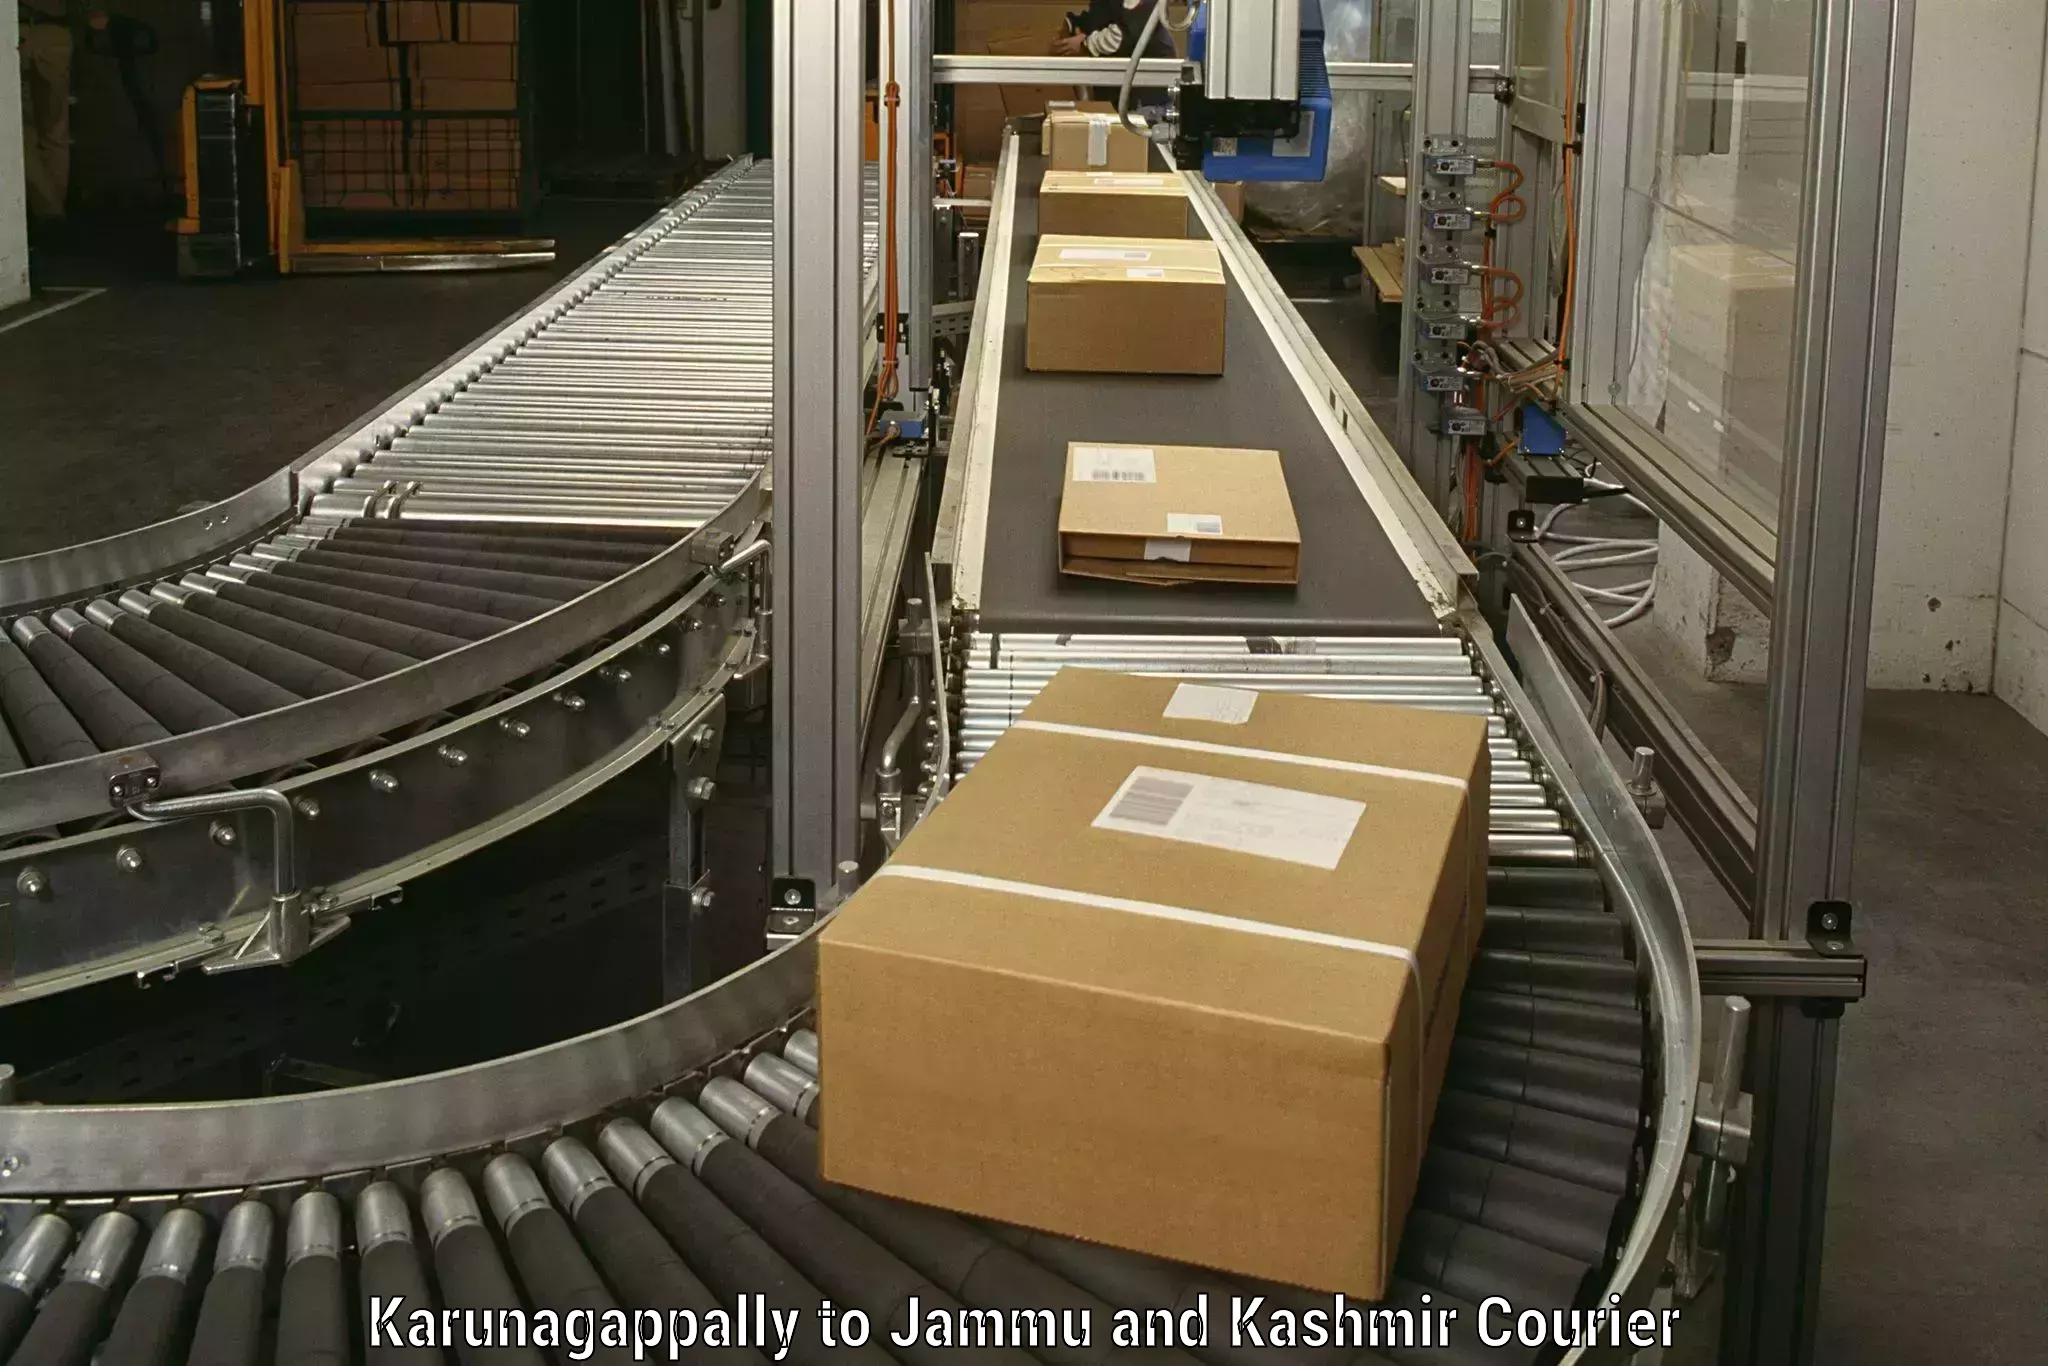 Furniture moving experts Karunagappally to IIT Jammu